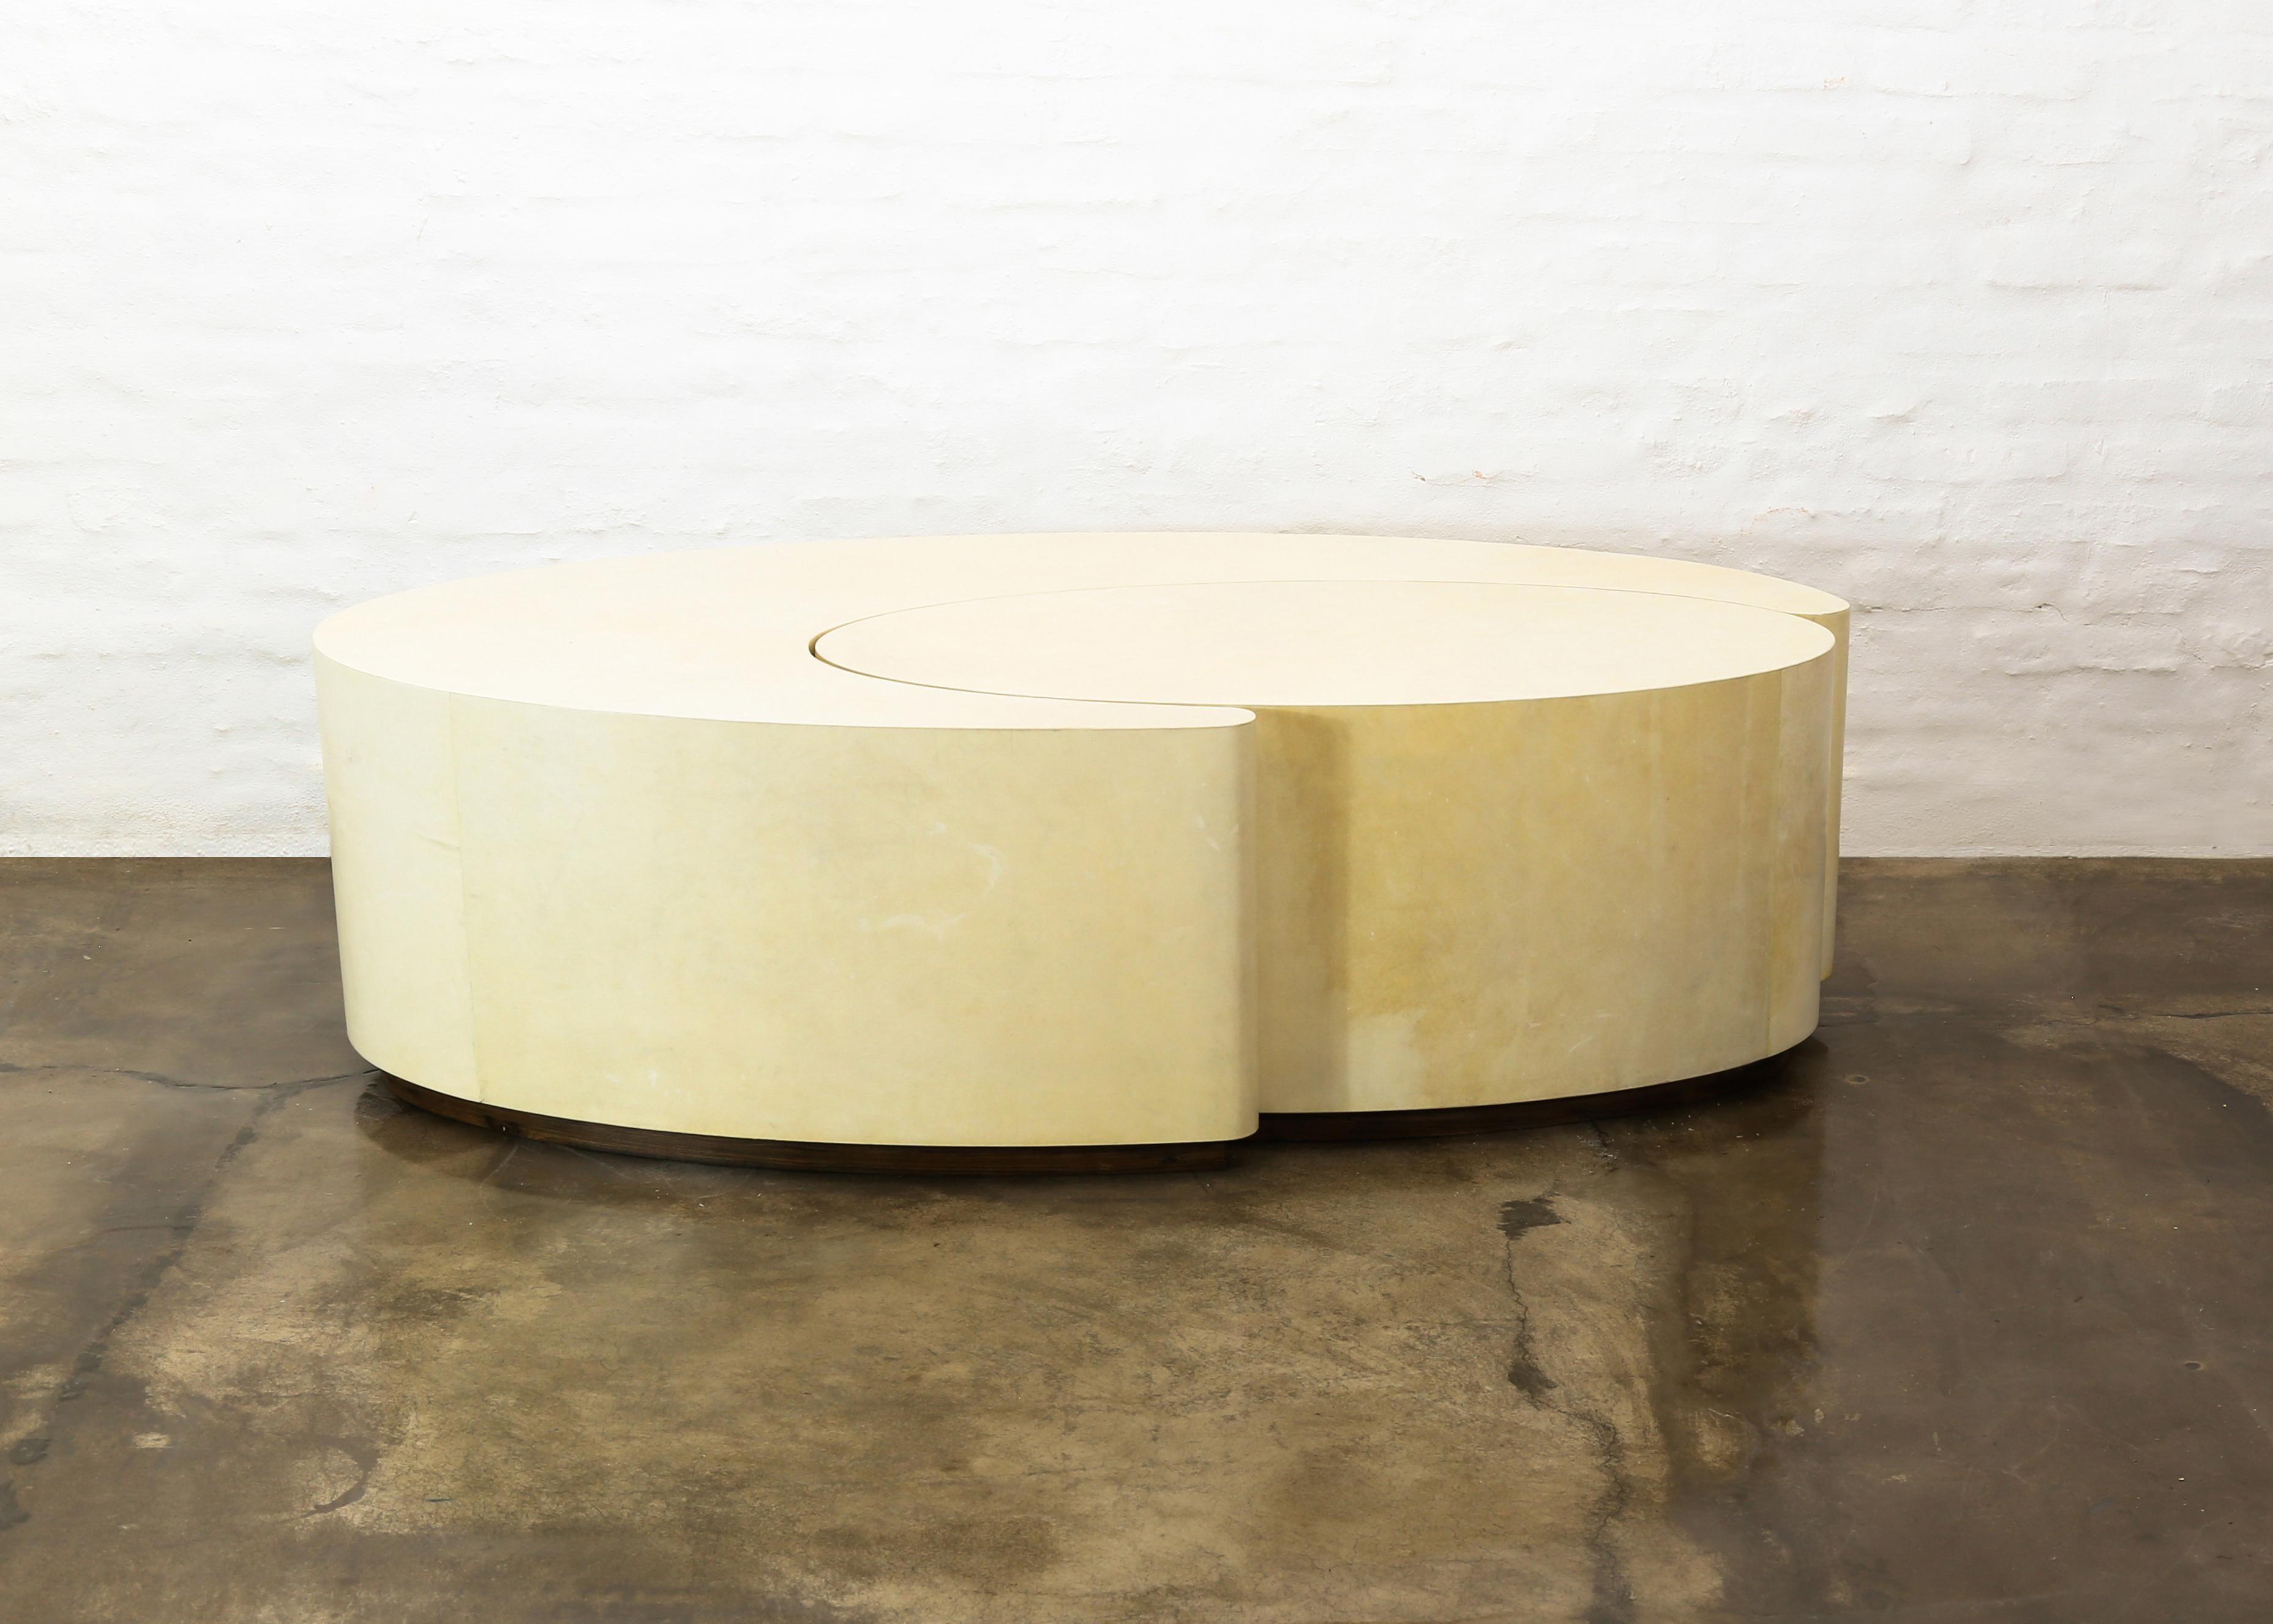 Cadenza Parchment Tables basses gigognes modernes et sculpturales.

Les tables gigognes Cadenza sont fabriquées à la main en bois enveloppé de peau de chèvre argentine géniale, présentée ici dans une finition naturelle, et peuvent être poussées